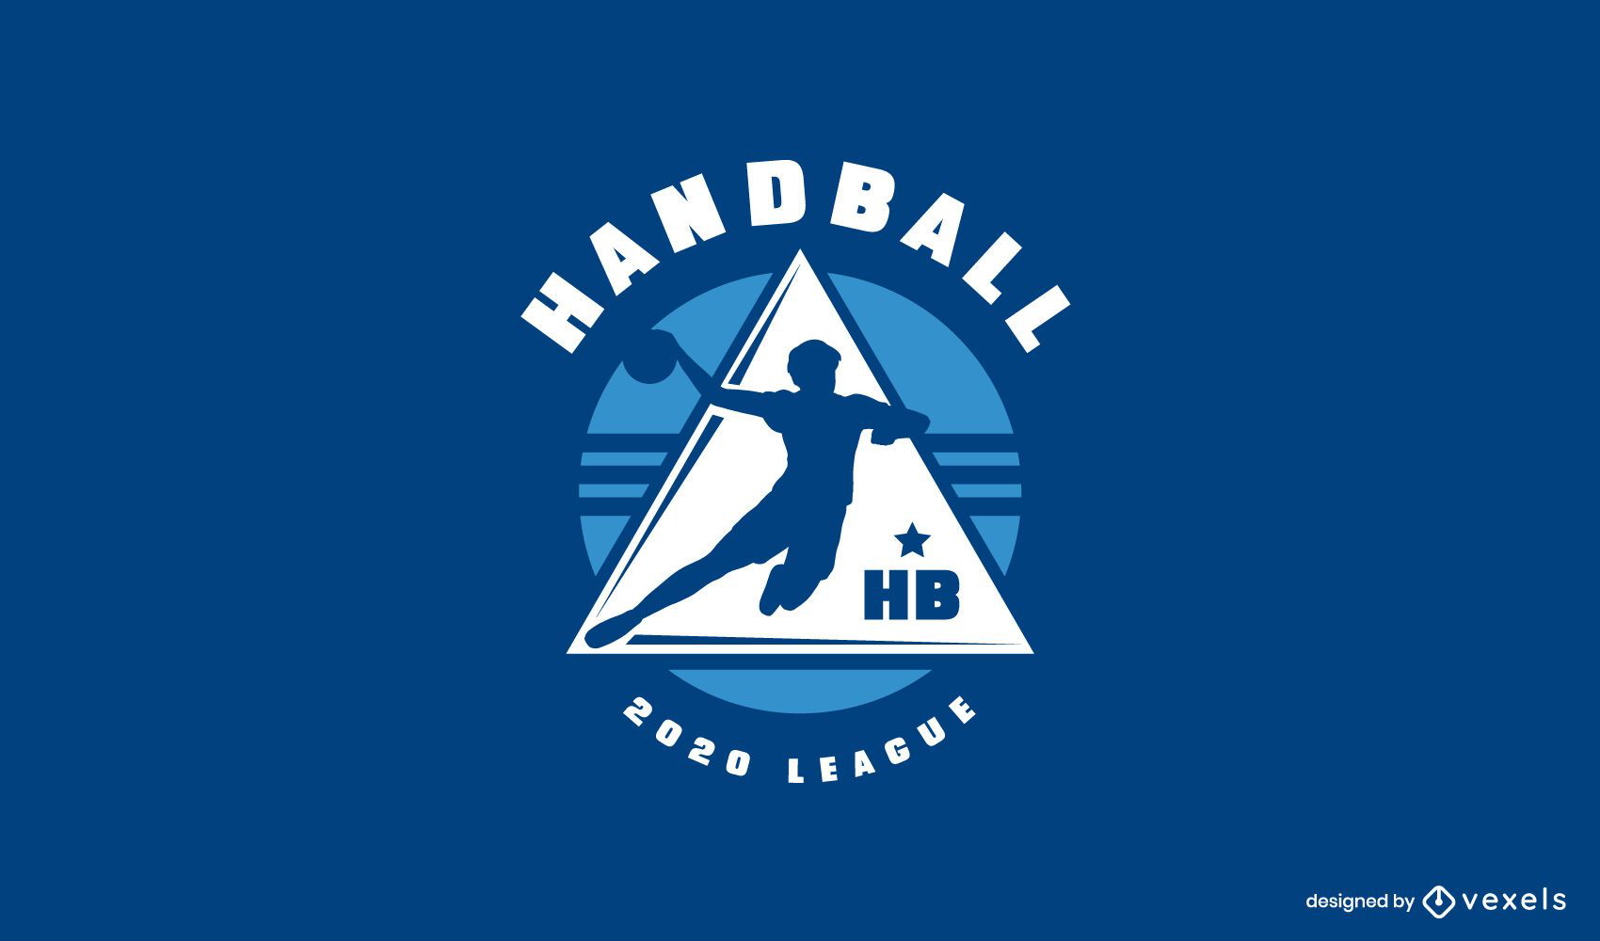 Modelo de logotipo da liga de handebol